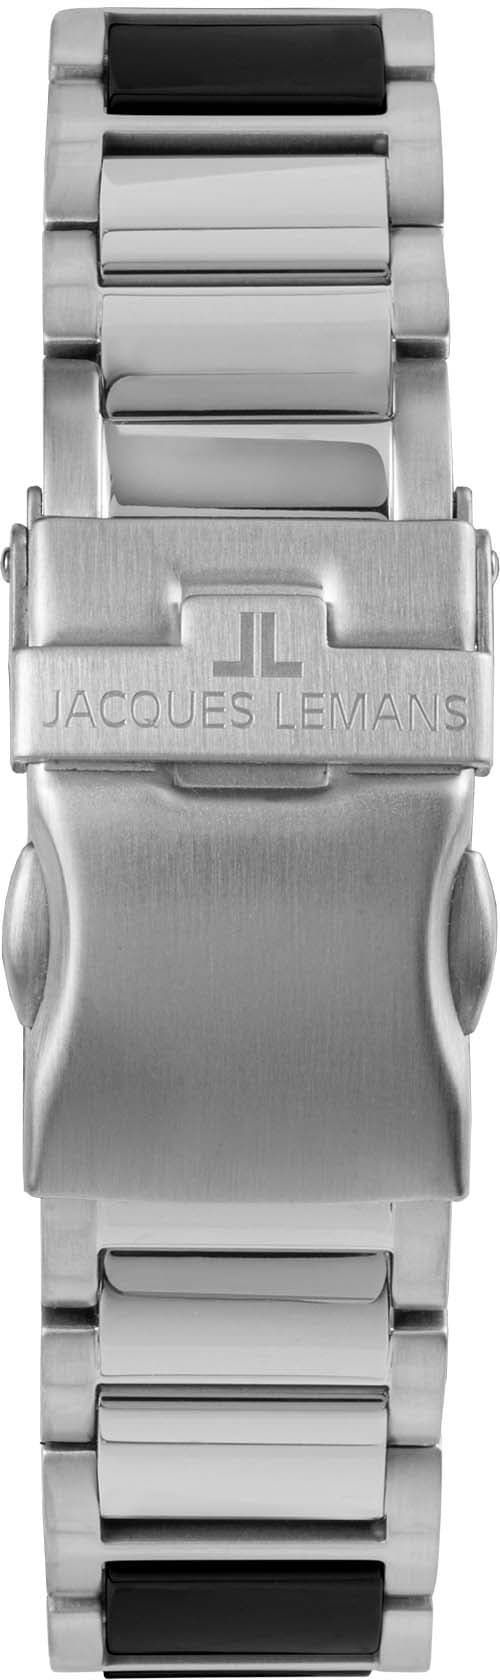 | 42-12A« Lemans »Liverpool, Keramikuhr Jacques BAUR online kaufen